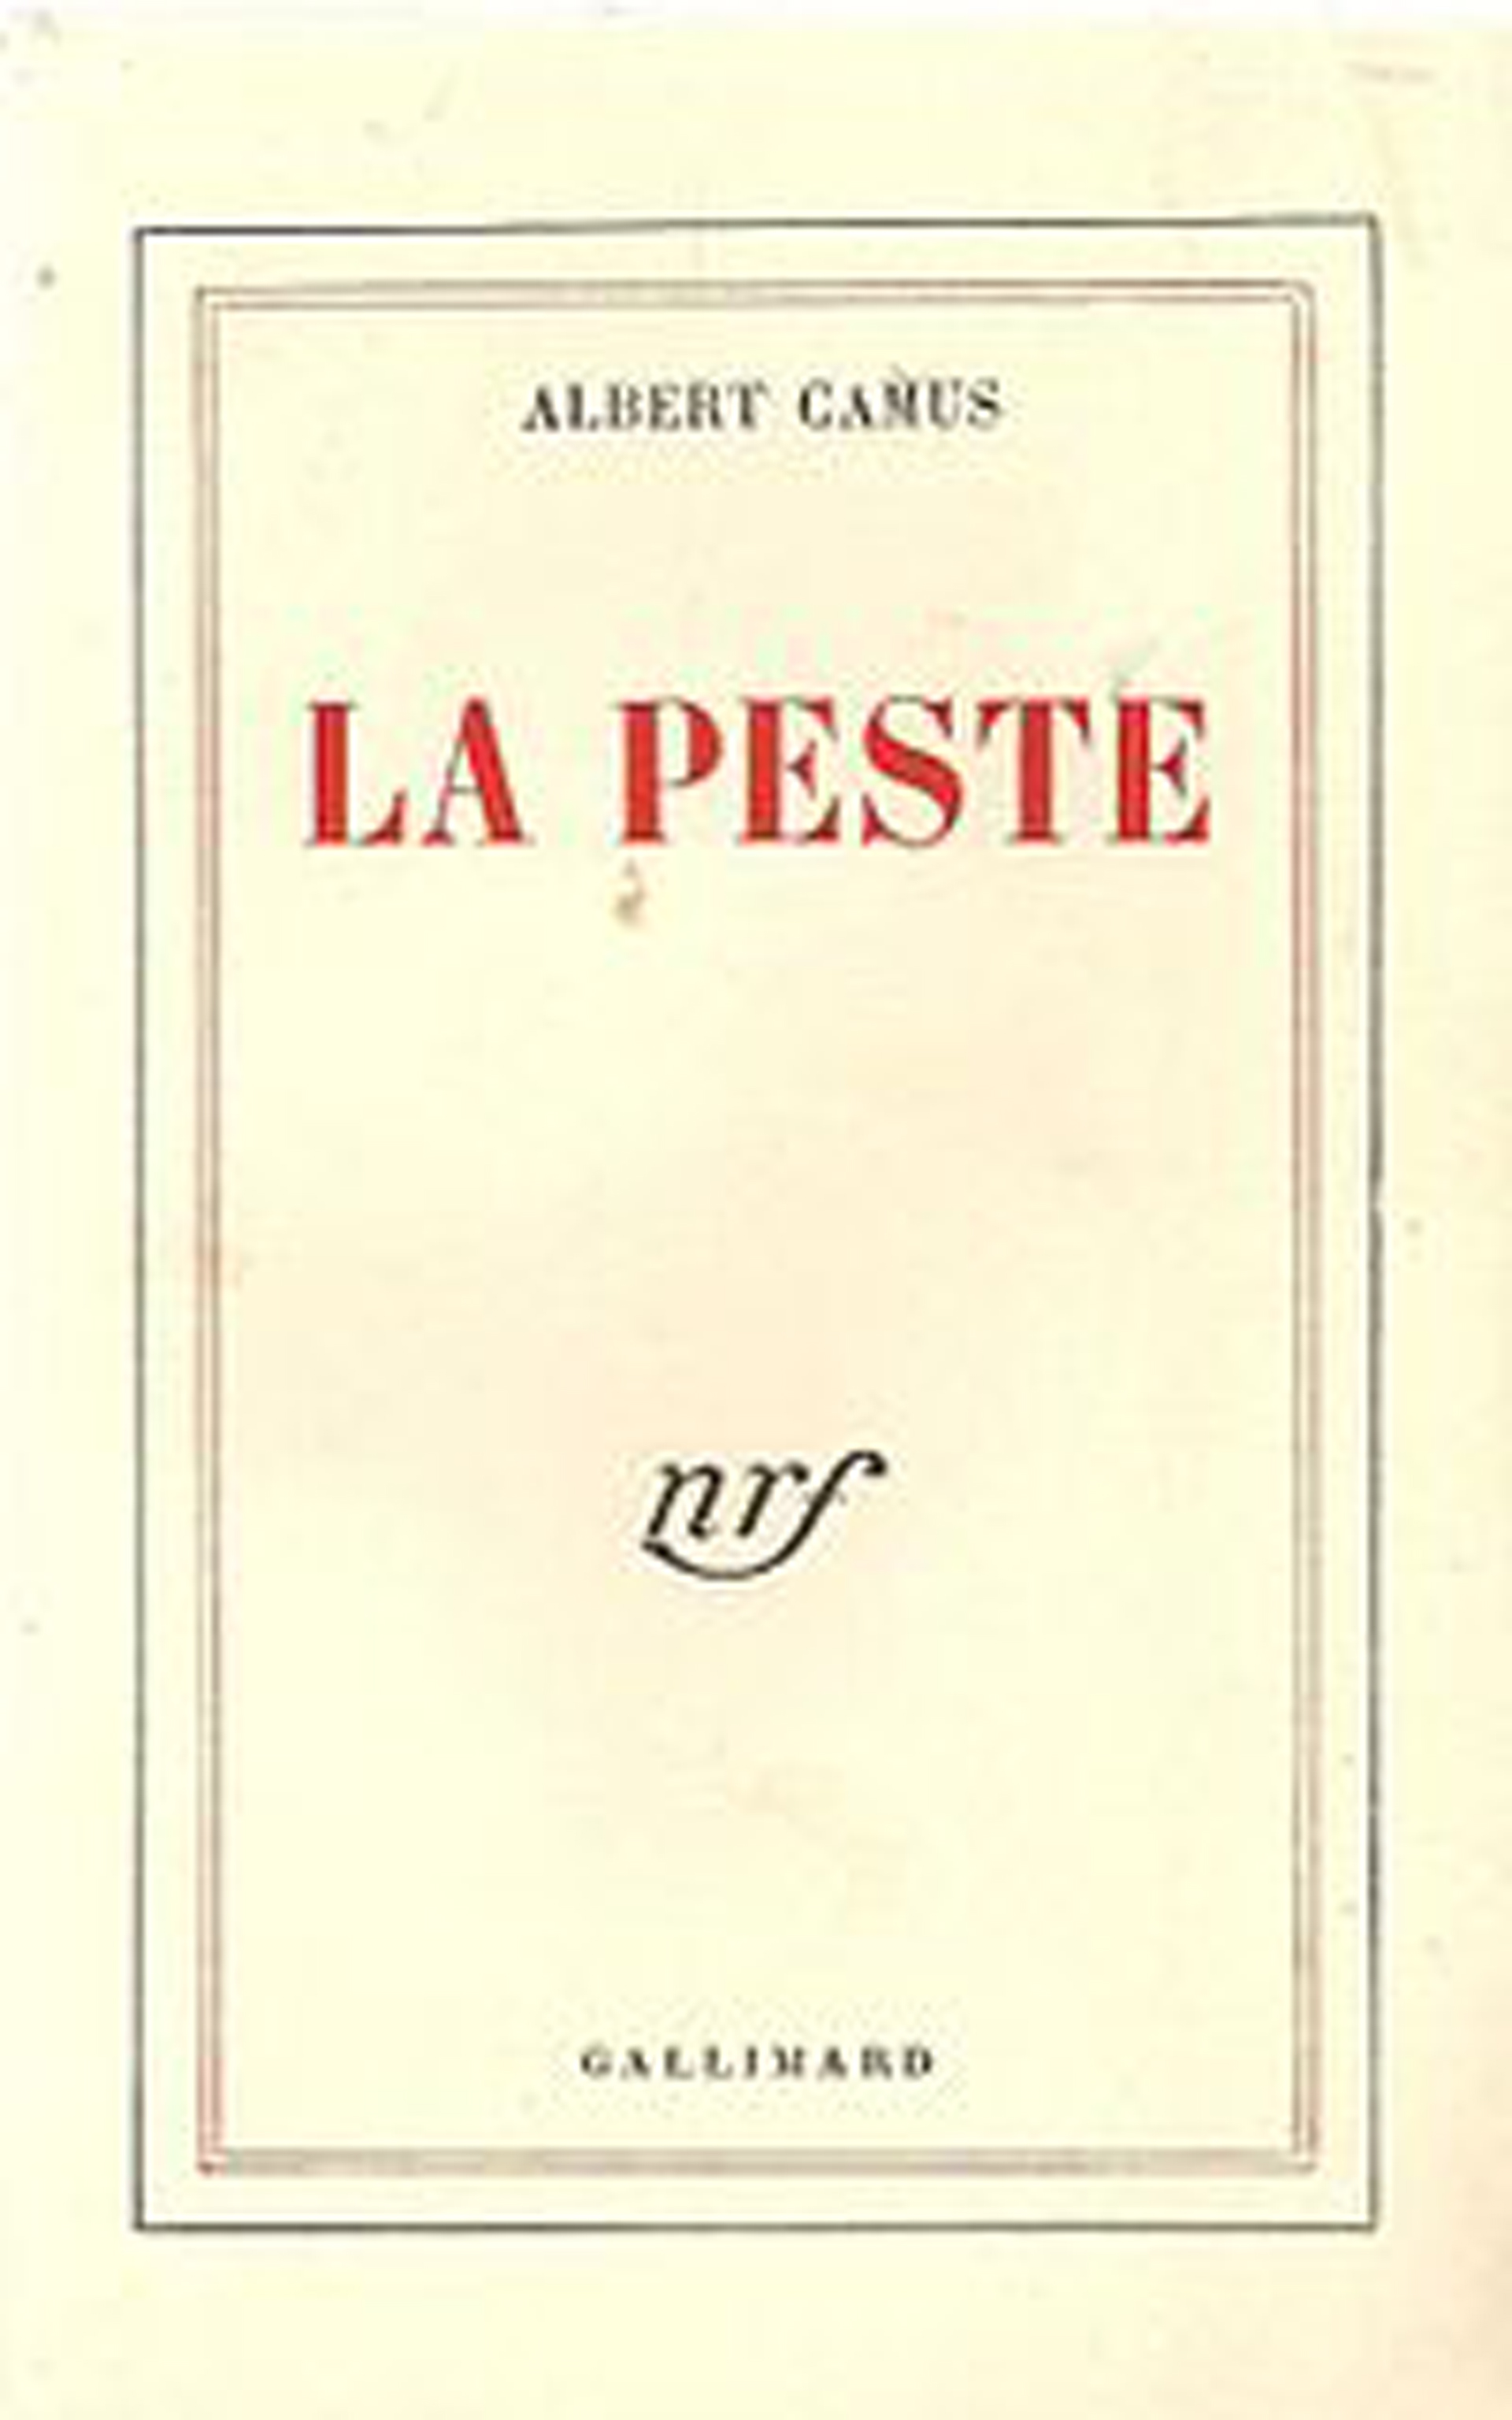 Primera edición de "La peste", de Camus, de 1947. La lectura de esta novela estuvo siempre centrada en la peste como metáfora del nazismo y la ocupación. Post pandemia, Gamerro asegura que se la lee de manera más literal.